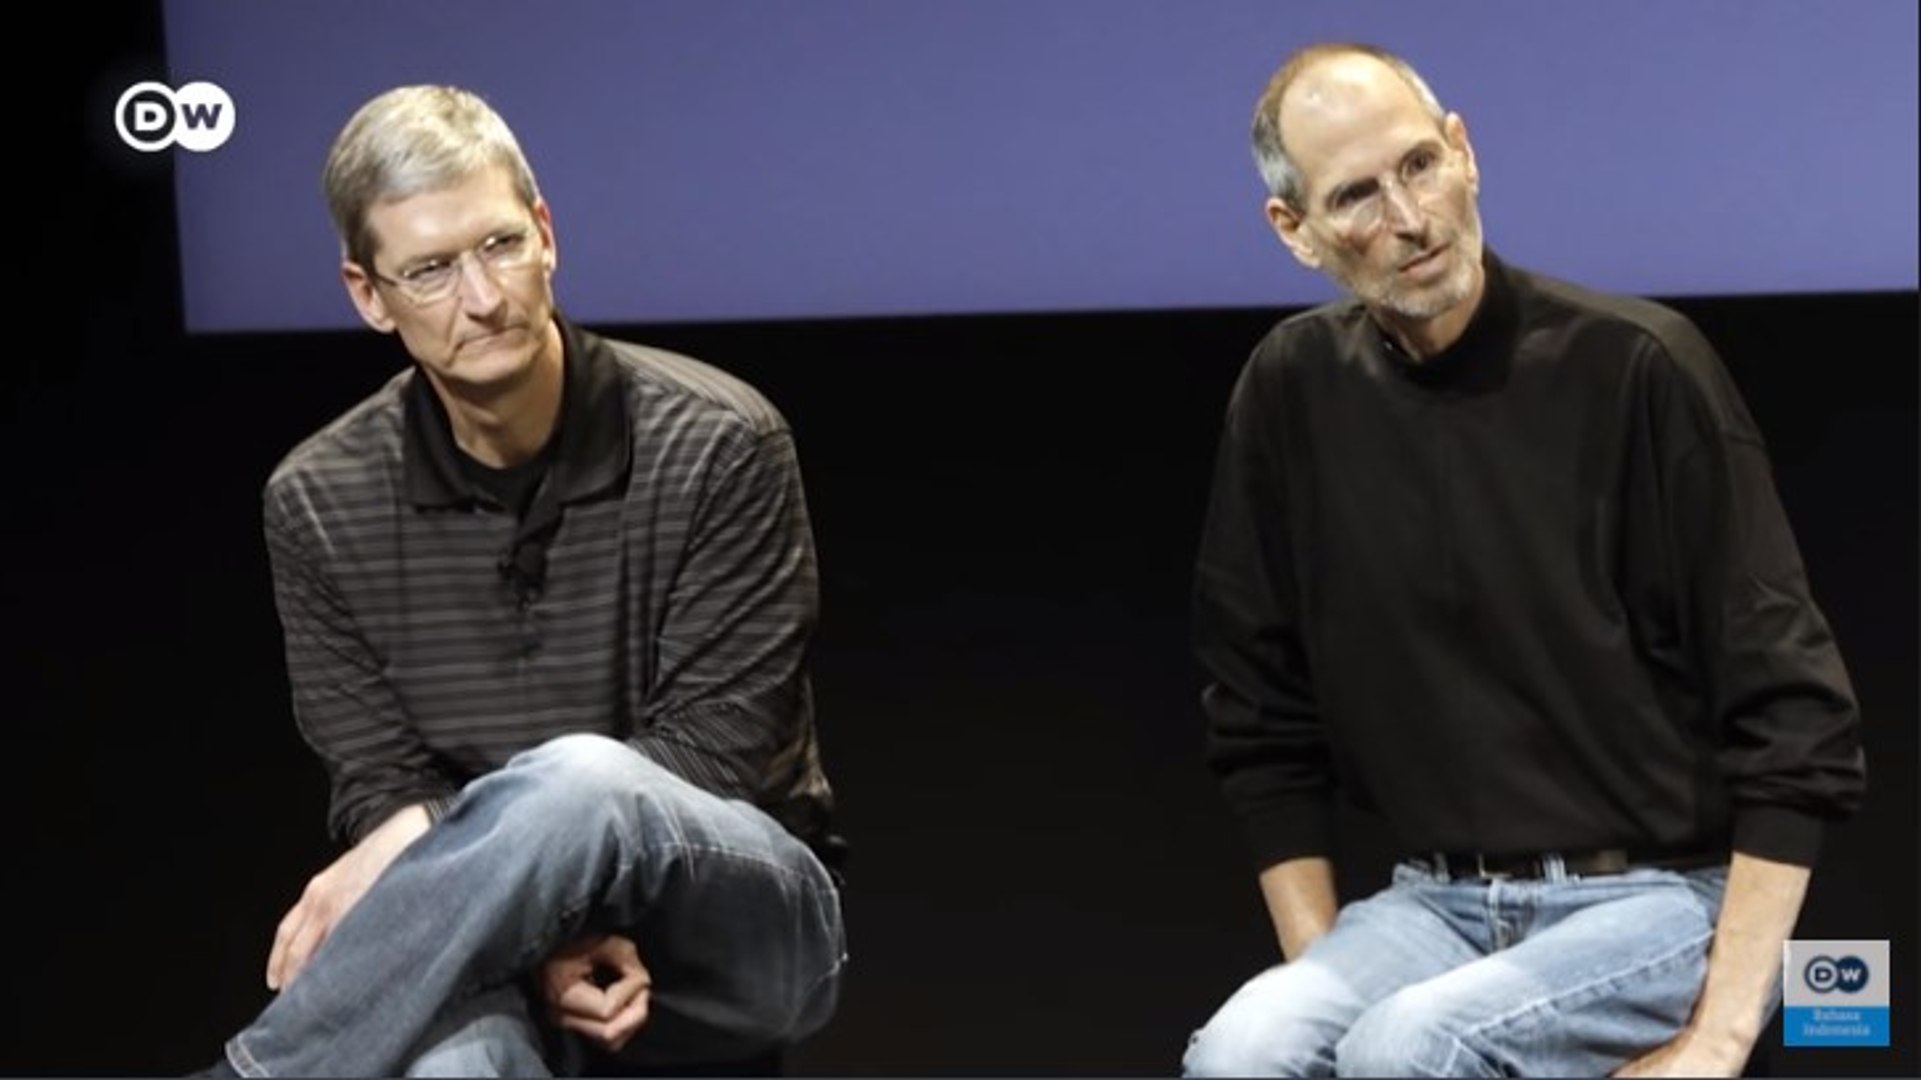 ⁣Mengenal Sosok Tim Cook, Sahabat Steve Jobs yang Bawa Apple Raih Sukses